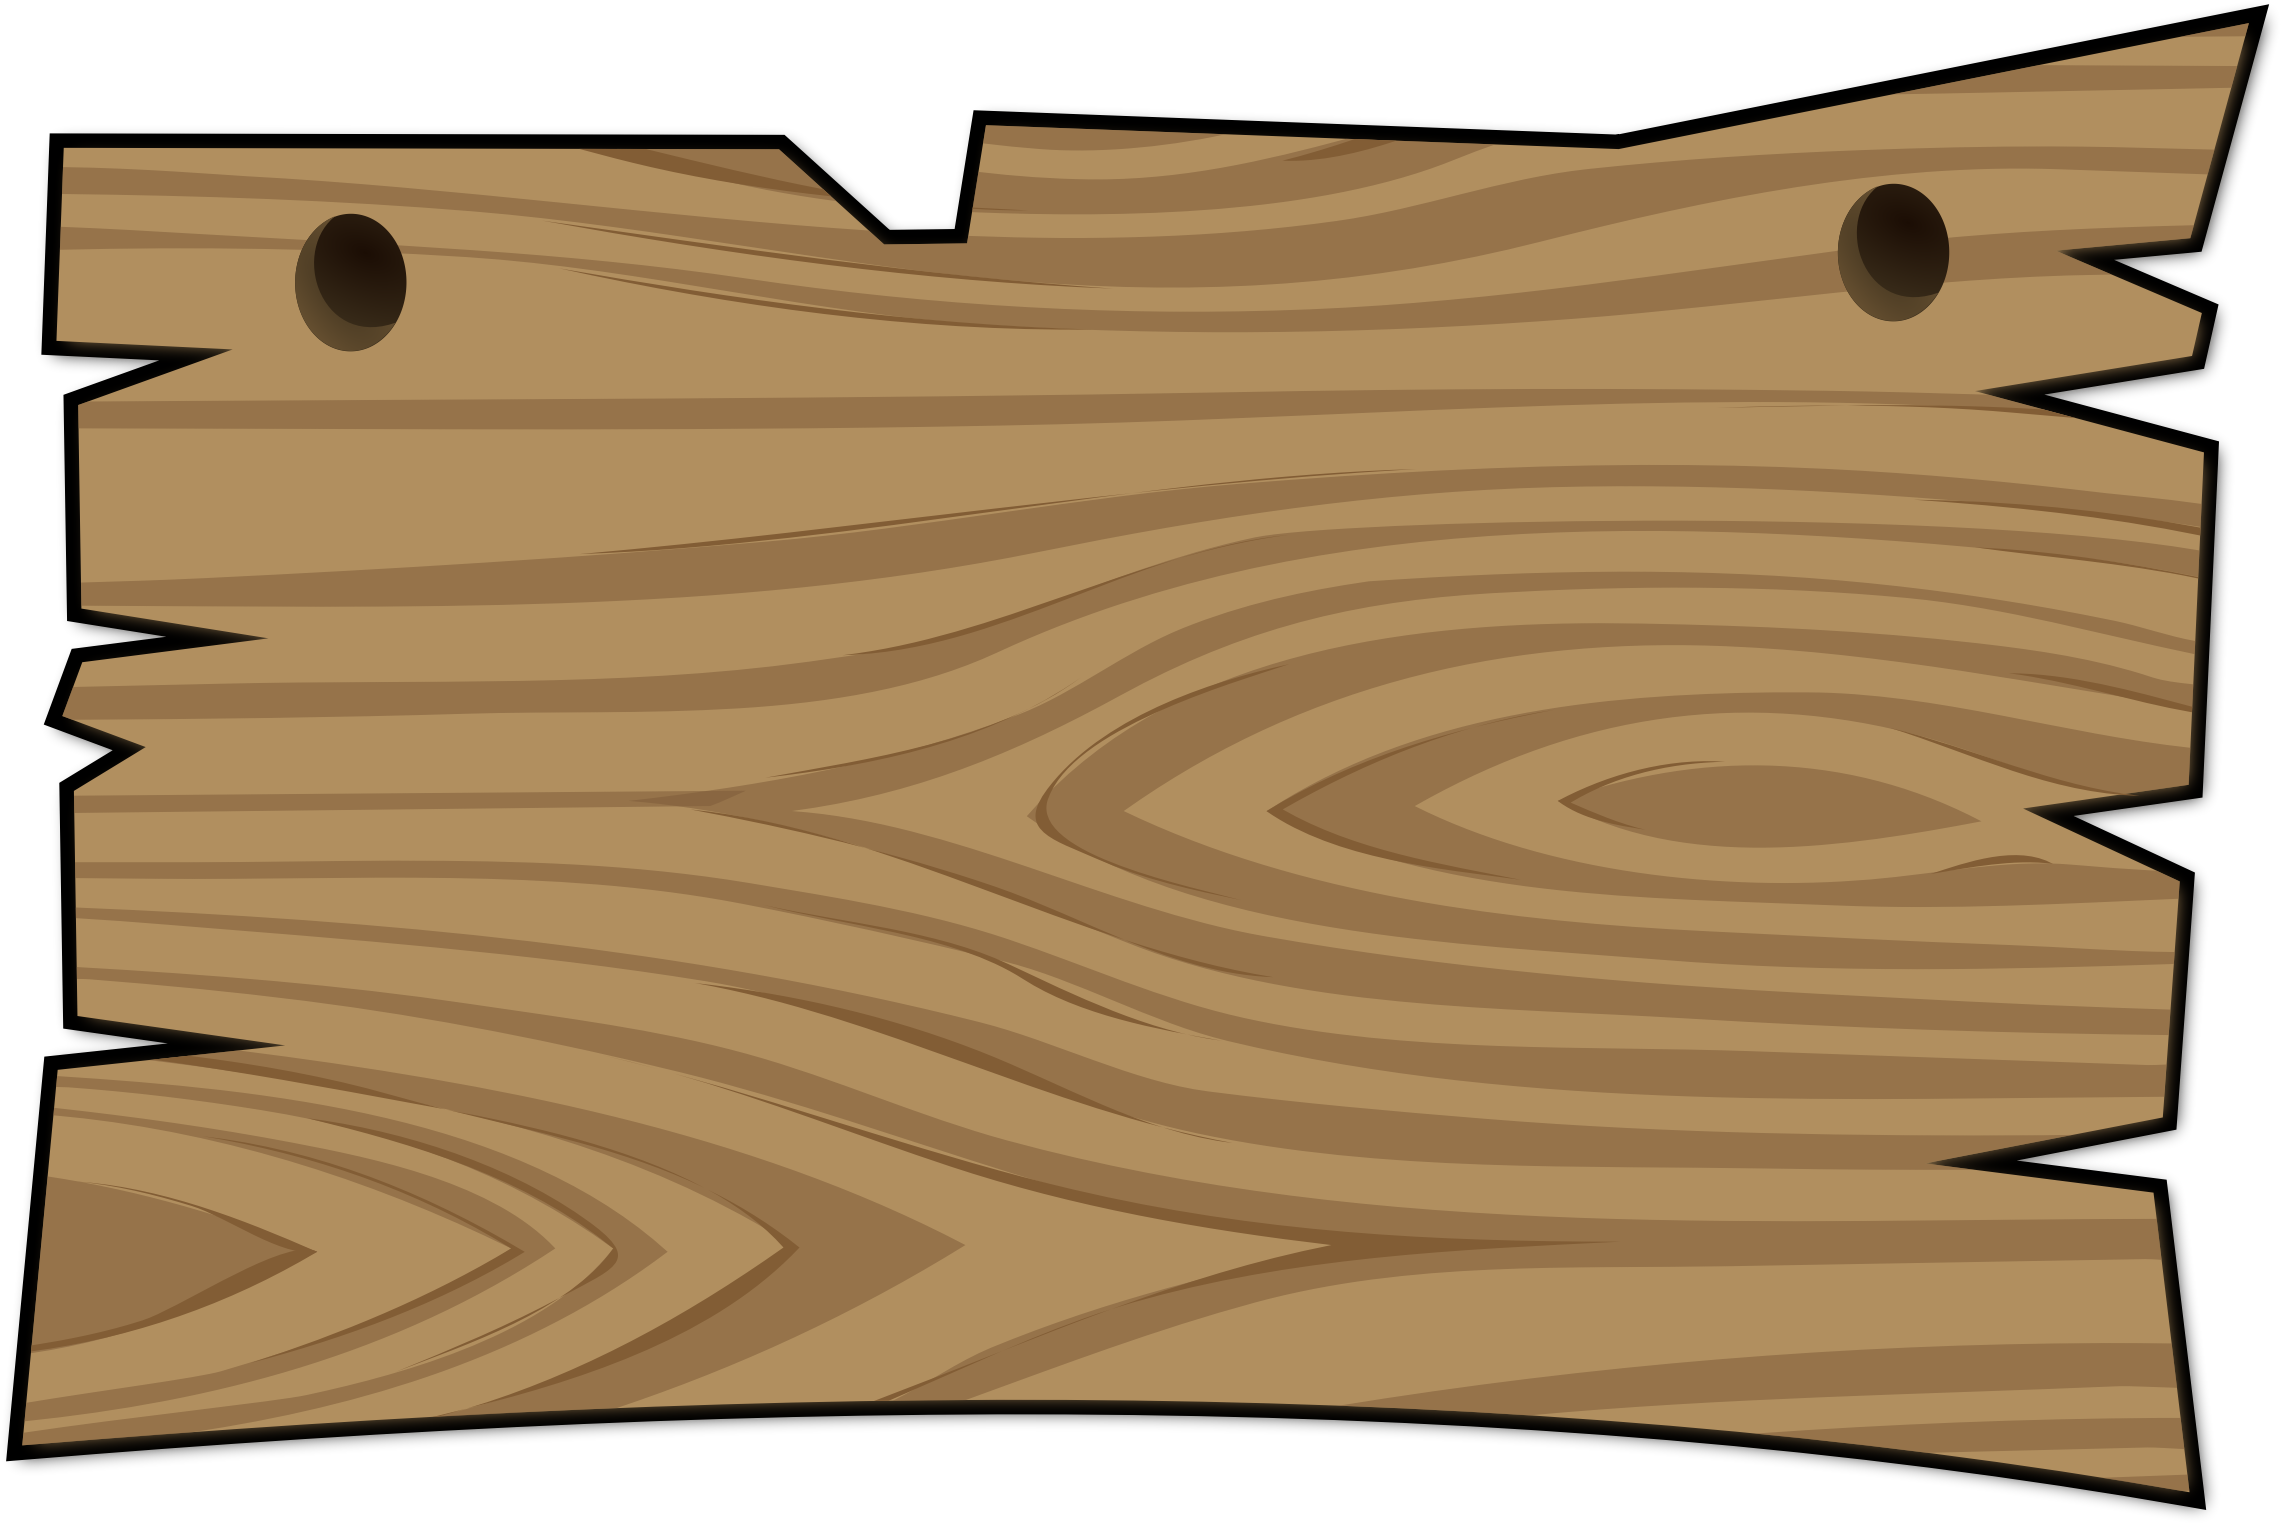 Pin on Wooden Board Ideas